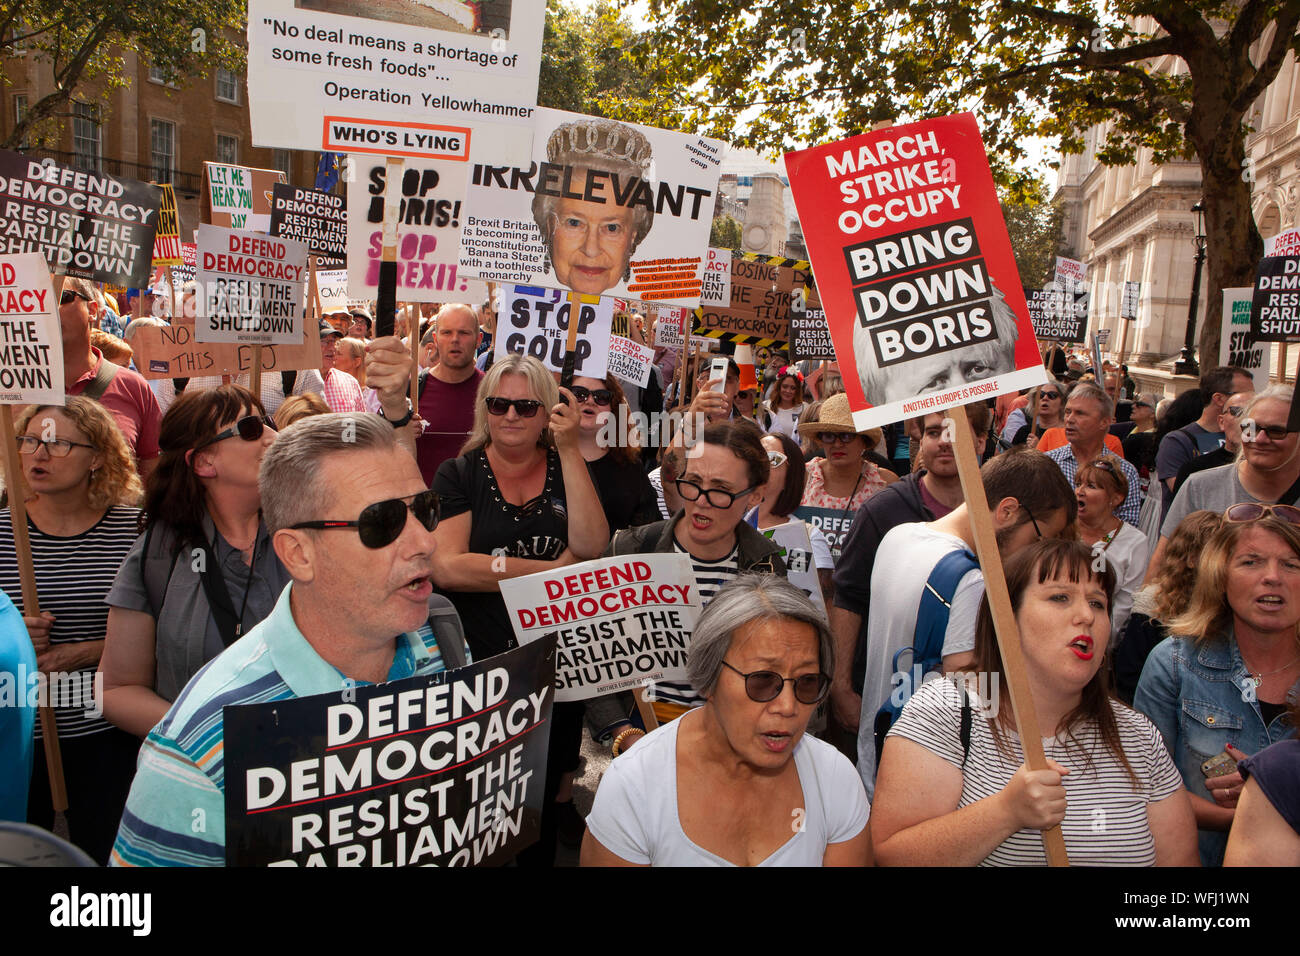 Decine di migliaia di pro-democrazia manifestanti si rivelò a Downing Street, riempimento Whitehall dalla piazza del Parlamento a Trafalgar Square per protestare contro la prevista proroga del Parlamento e un possibile No-Deal Brexit. Foto Stock